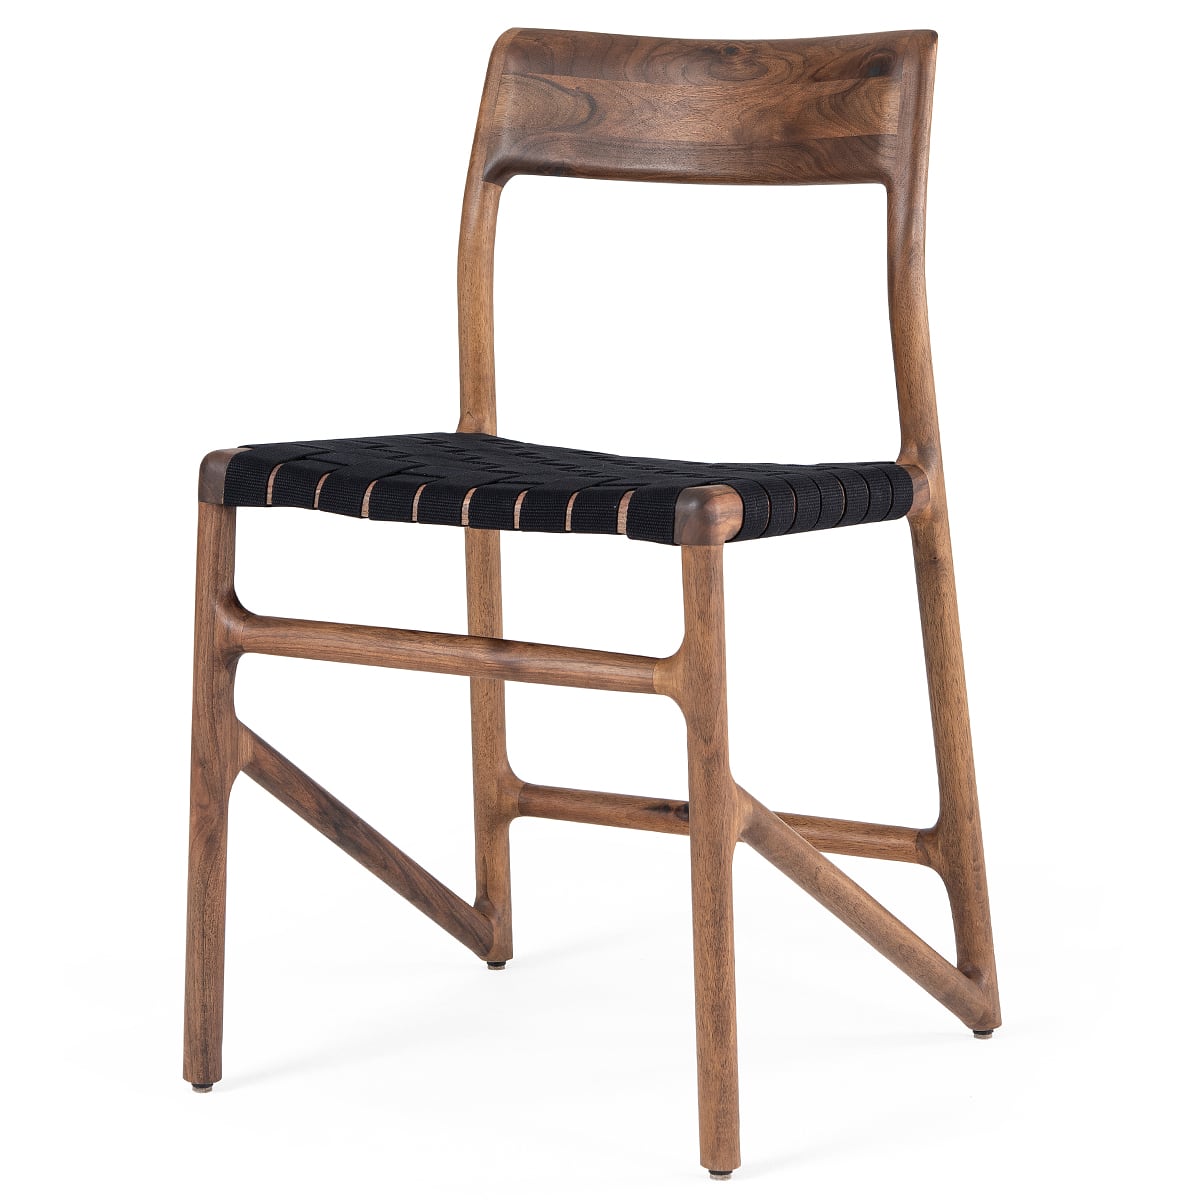 FAWN - الكرسي - خشب الجوز الصلب، طلاء طبيعي بالزيت الطبيعي، أسود حزام قطني